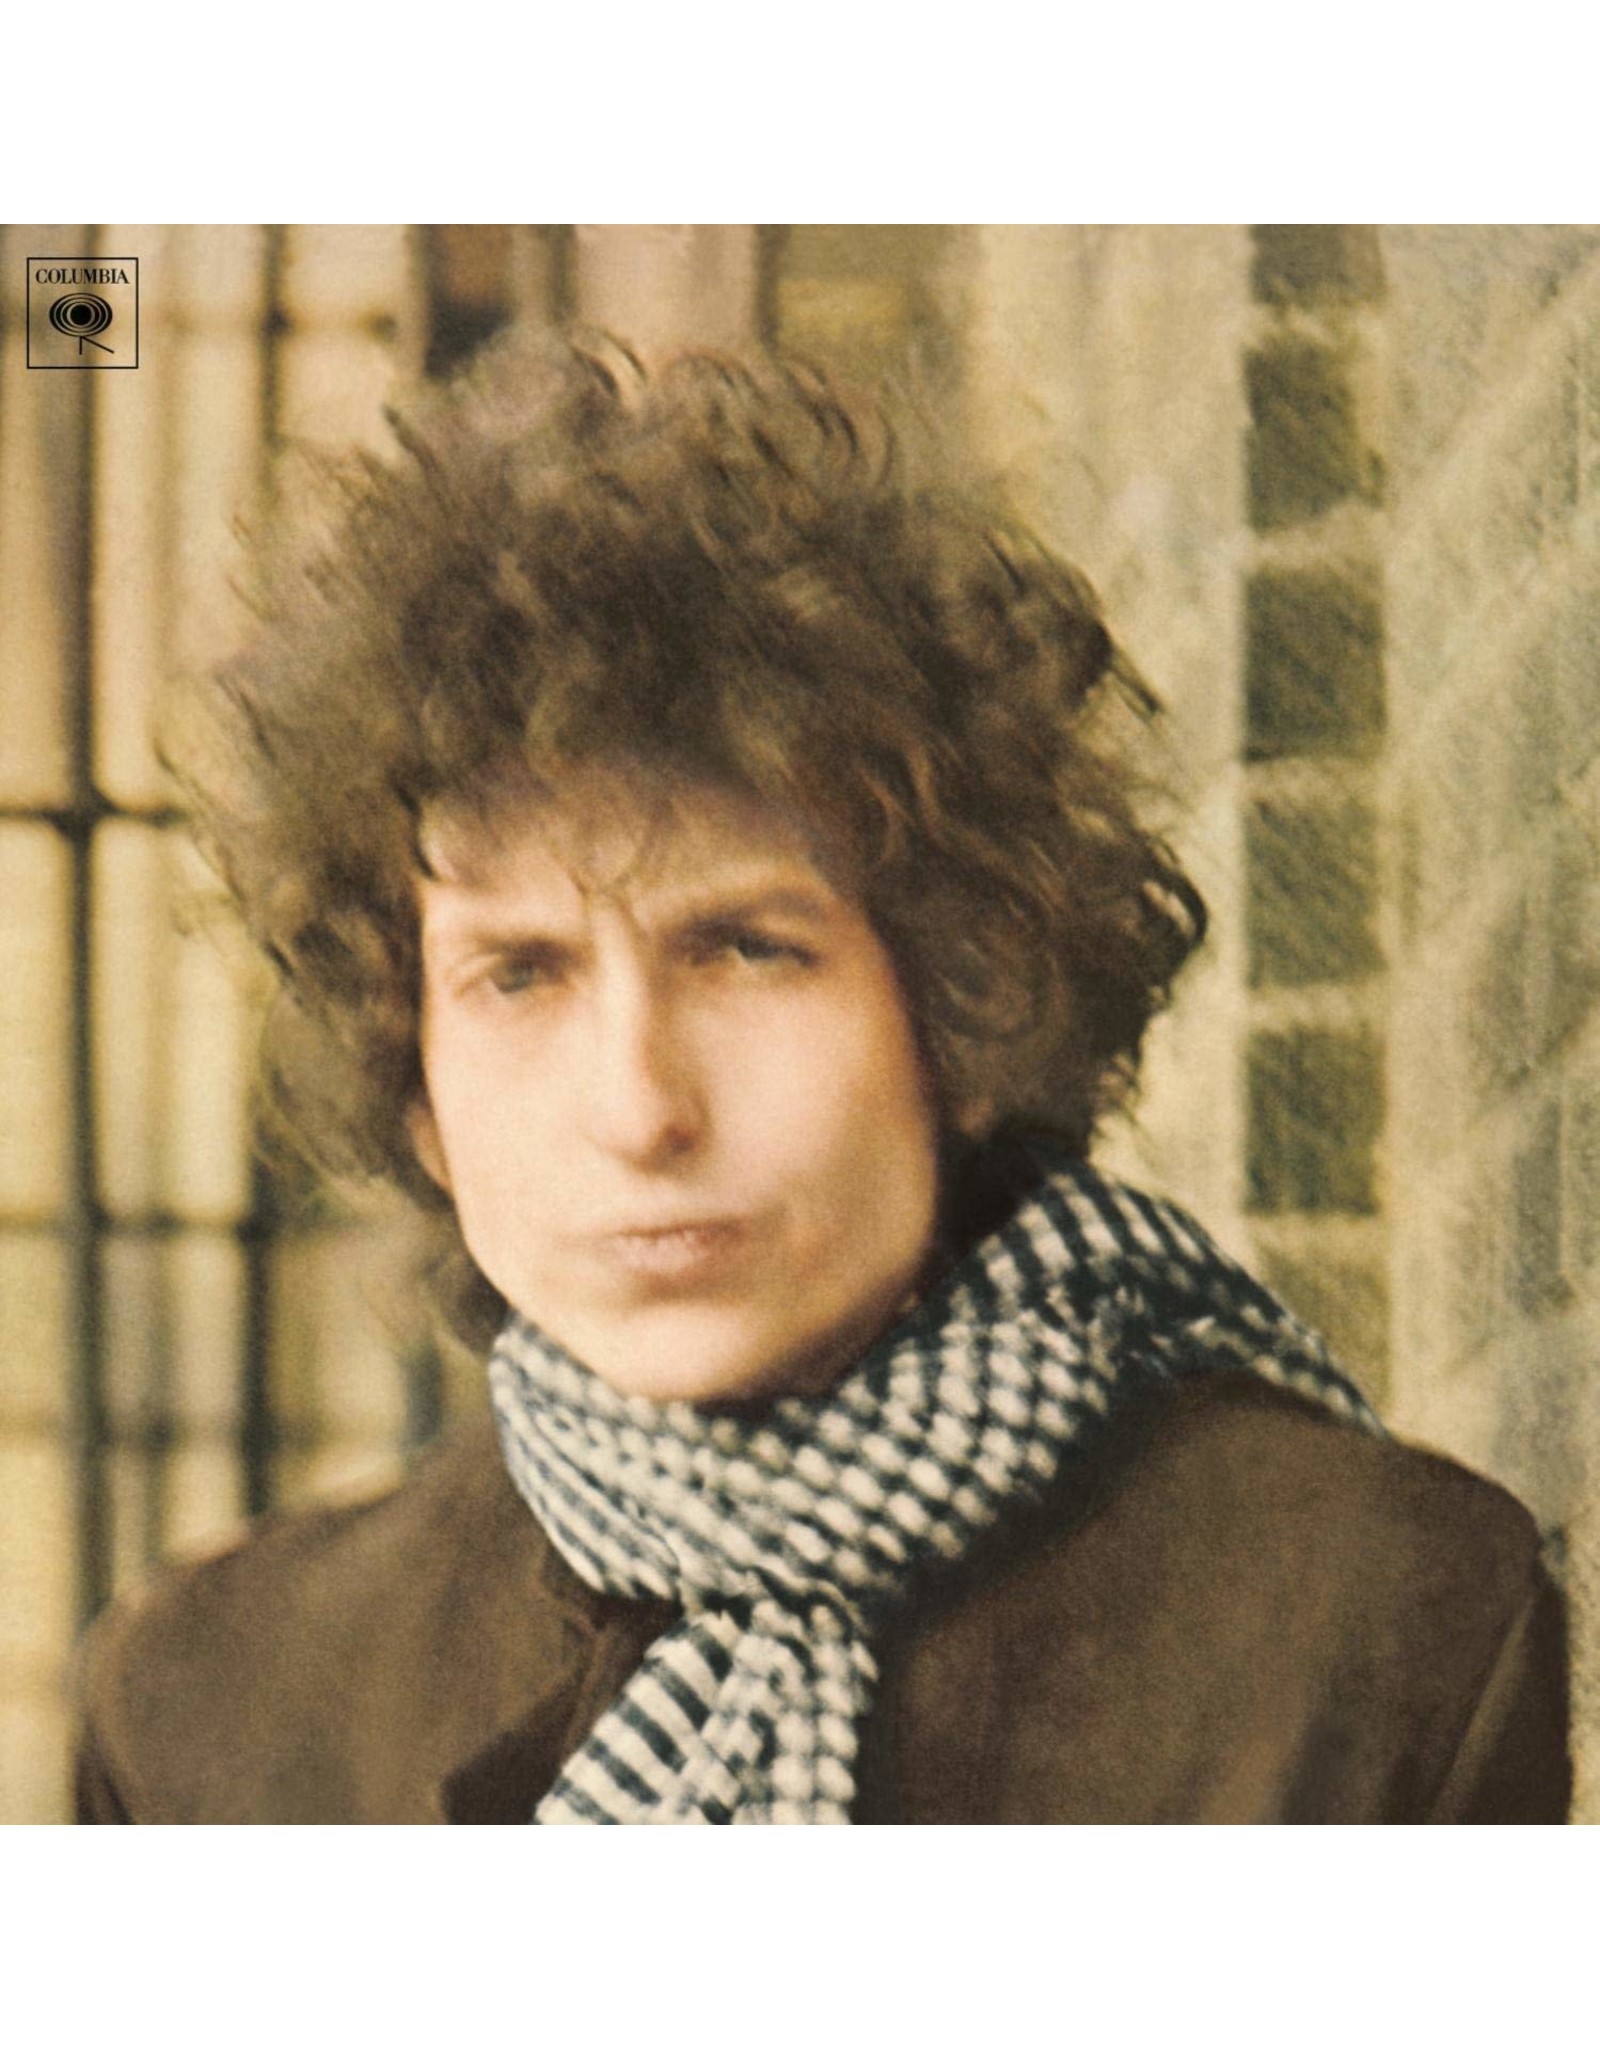 Bob Dylan - Blonde on Blonde (Mono)